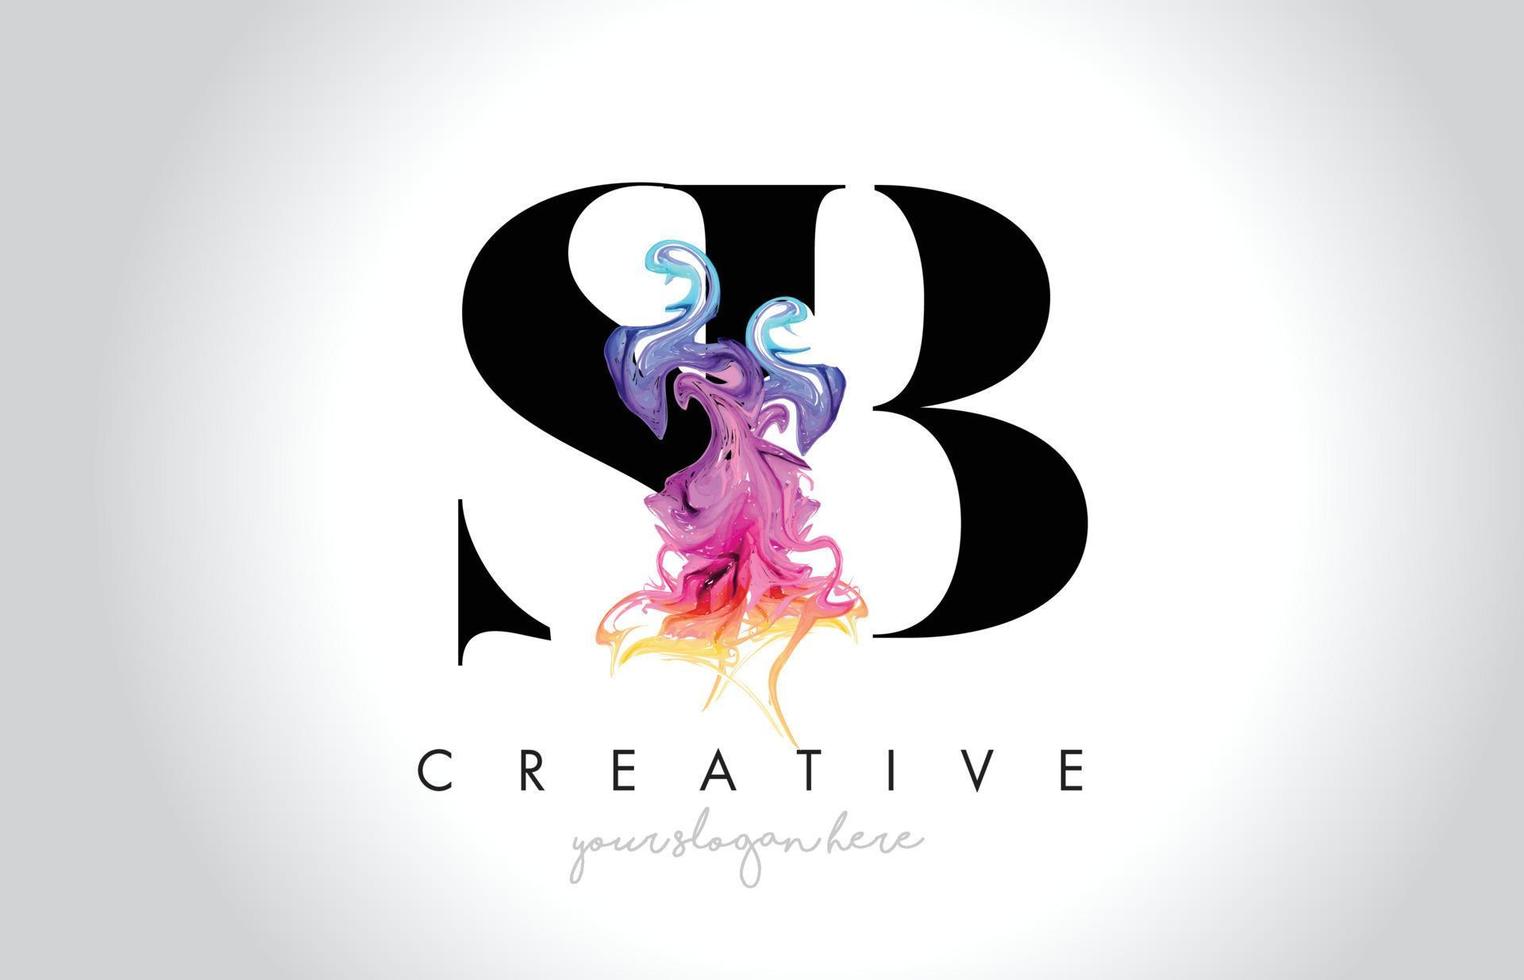 création de logo de lettre créative dynamique sb avec vecteur fluide d'encre de fumée colorée